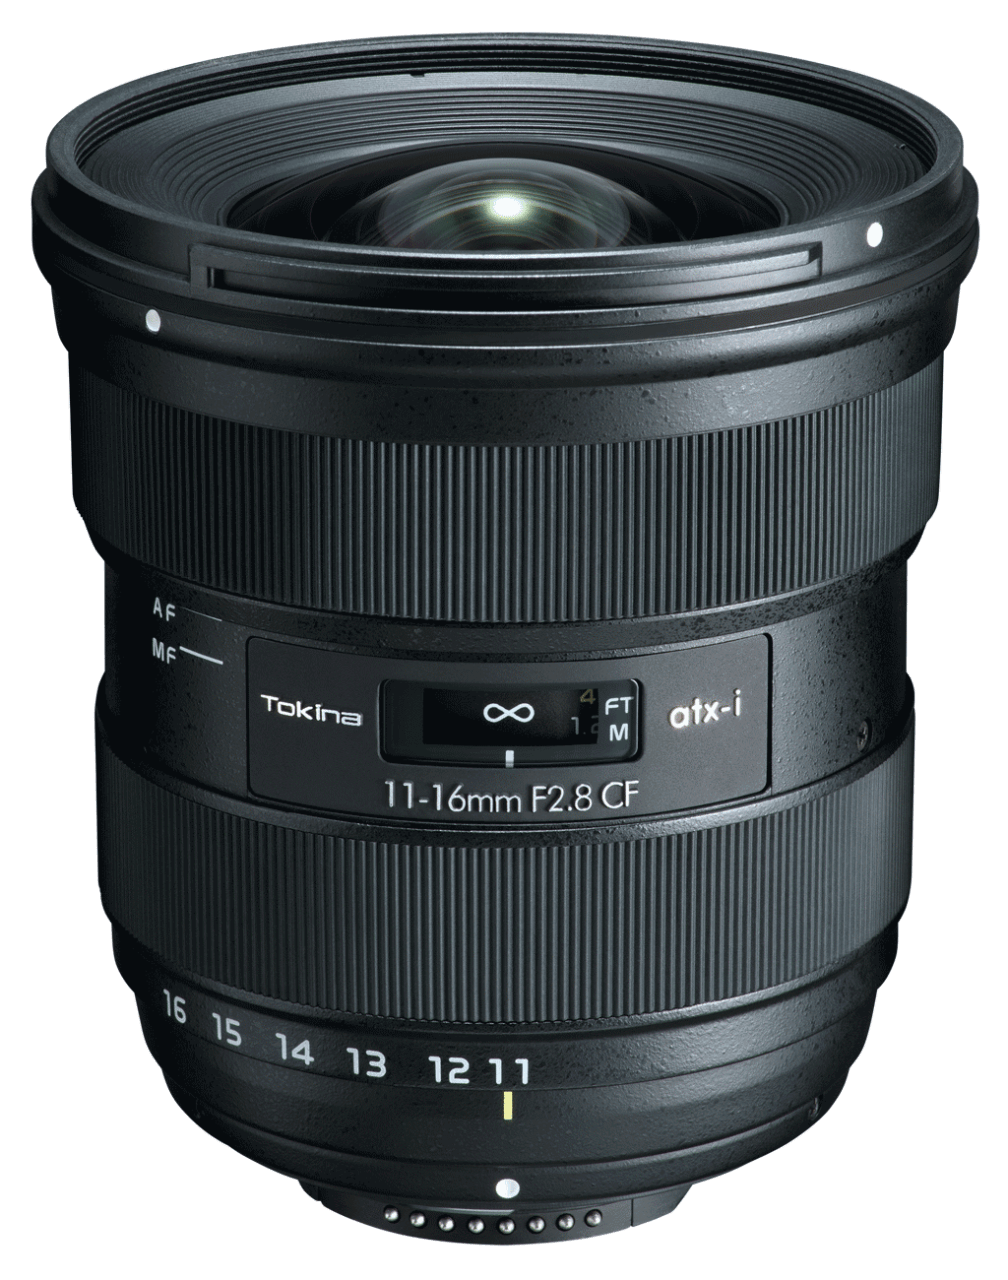 Tokina atx-i 11-16mm F2.8 CF for Nikon (new)